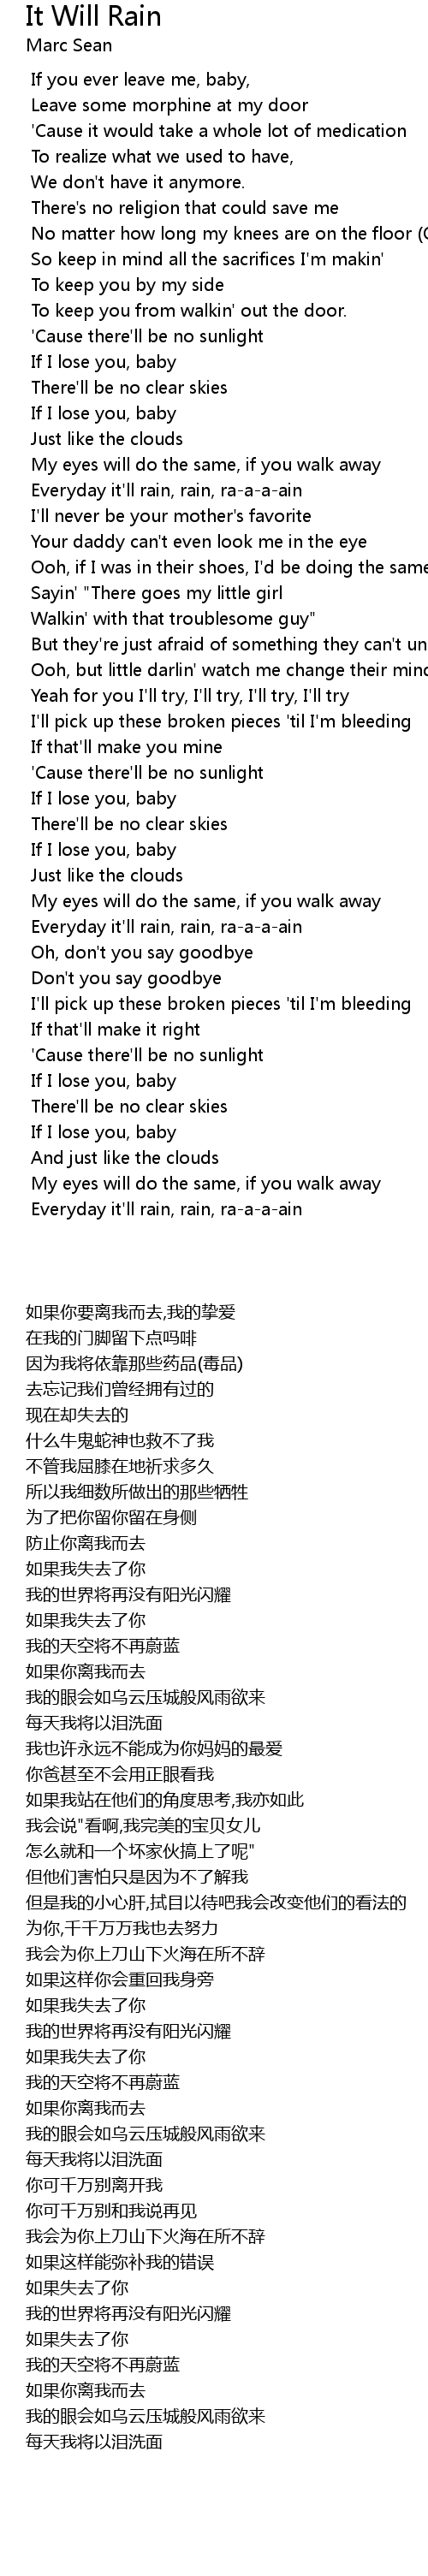 It will rain lyrics